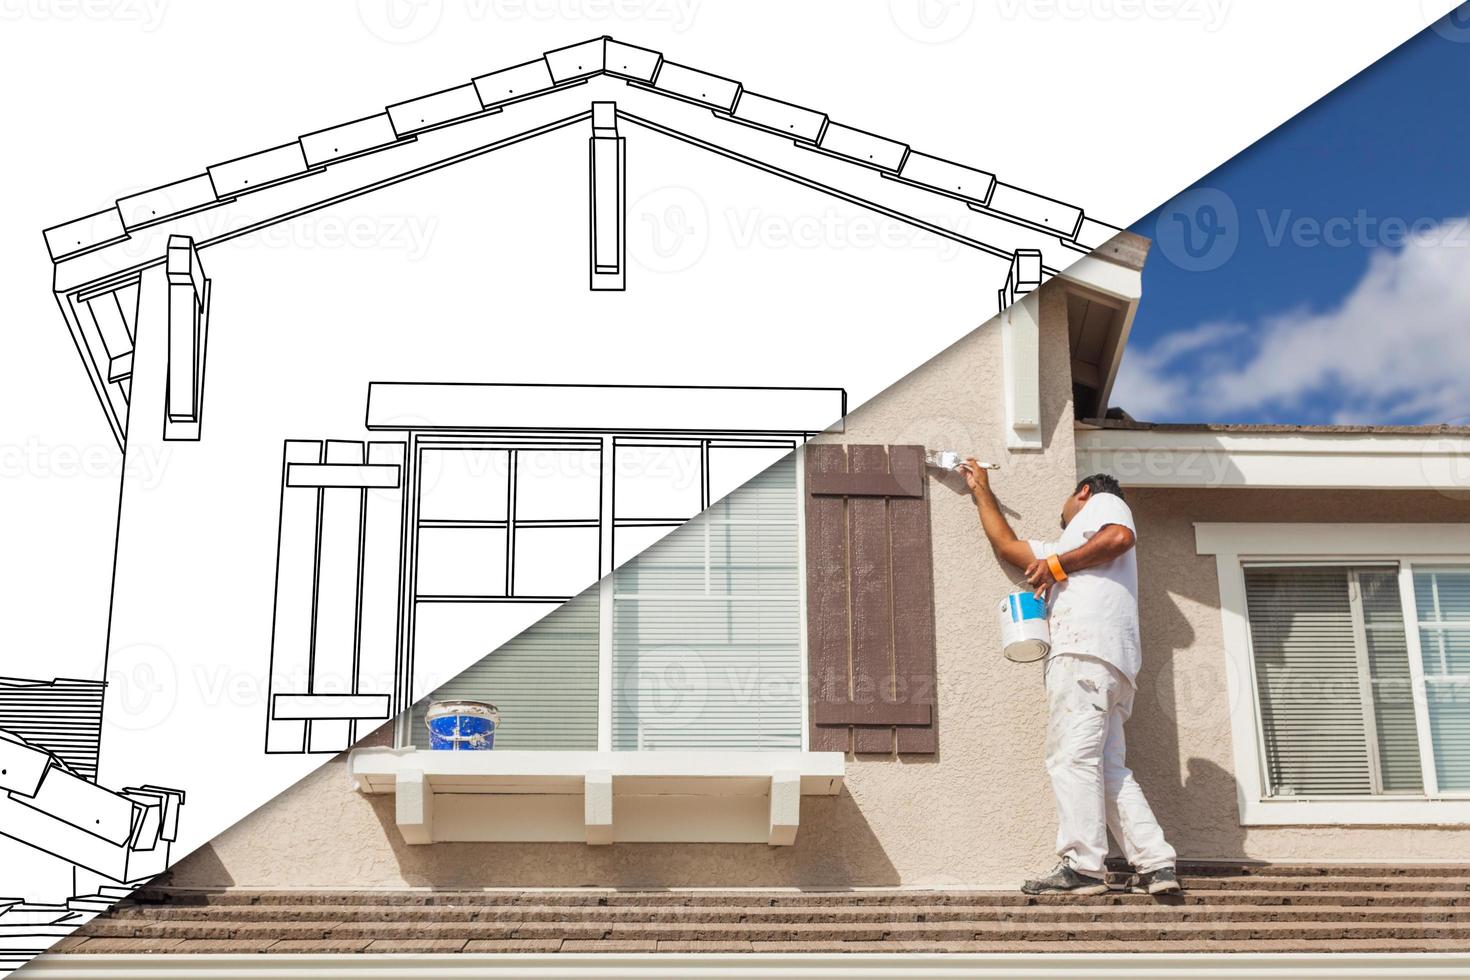 écran divisé en diagonale du dessin et photo du peintre en bâtiment peignant la maison